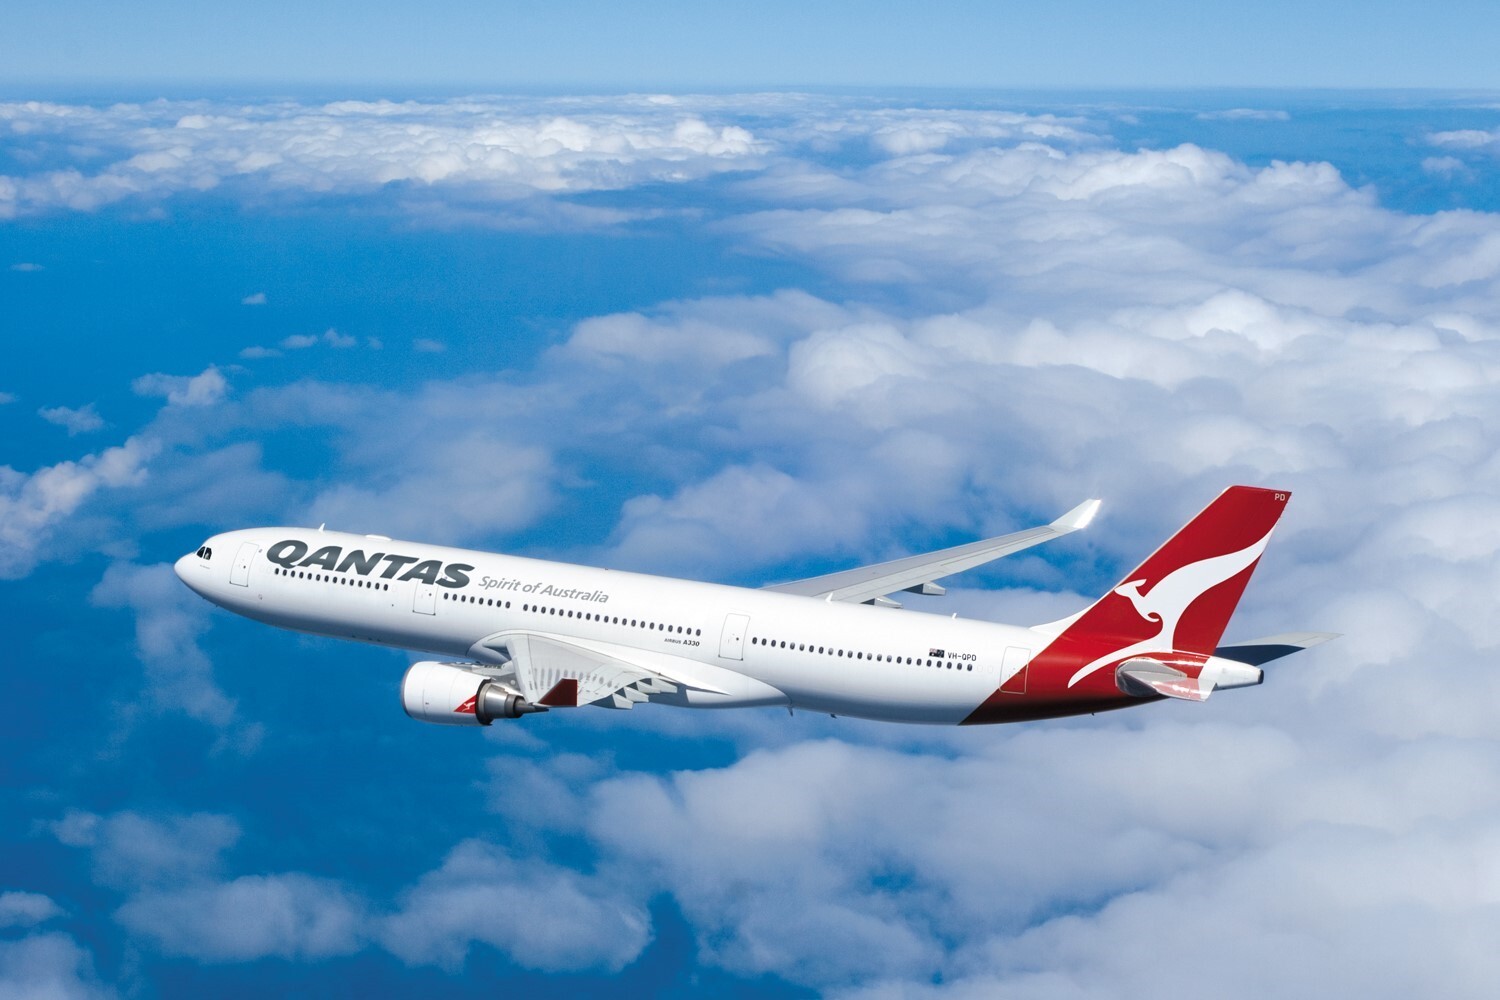 สายการบินแควนตัสจำหน่ายตั๋วโดยสารโปรโมชั่น "Mid-Year Special" เส้นทางออสเตรเลีย